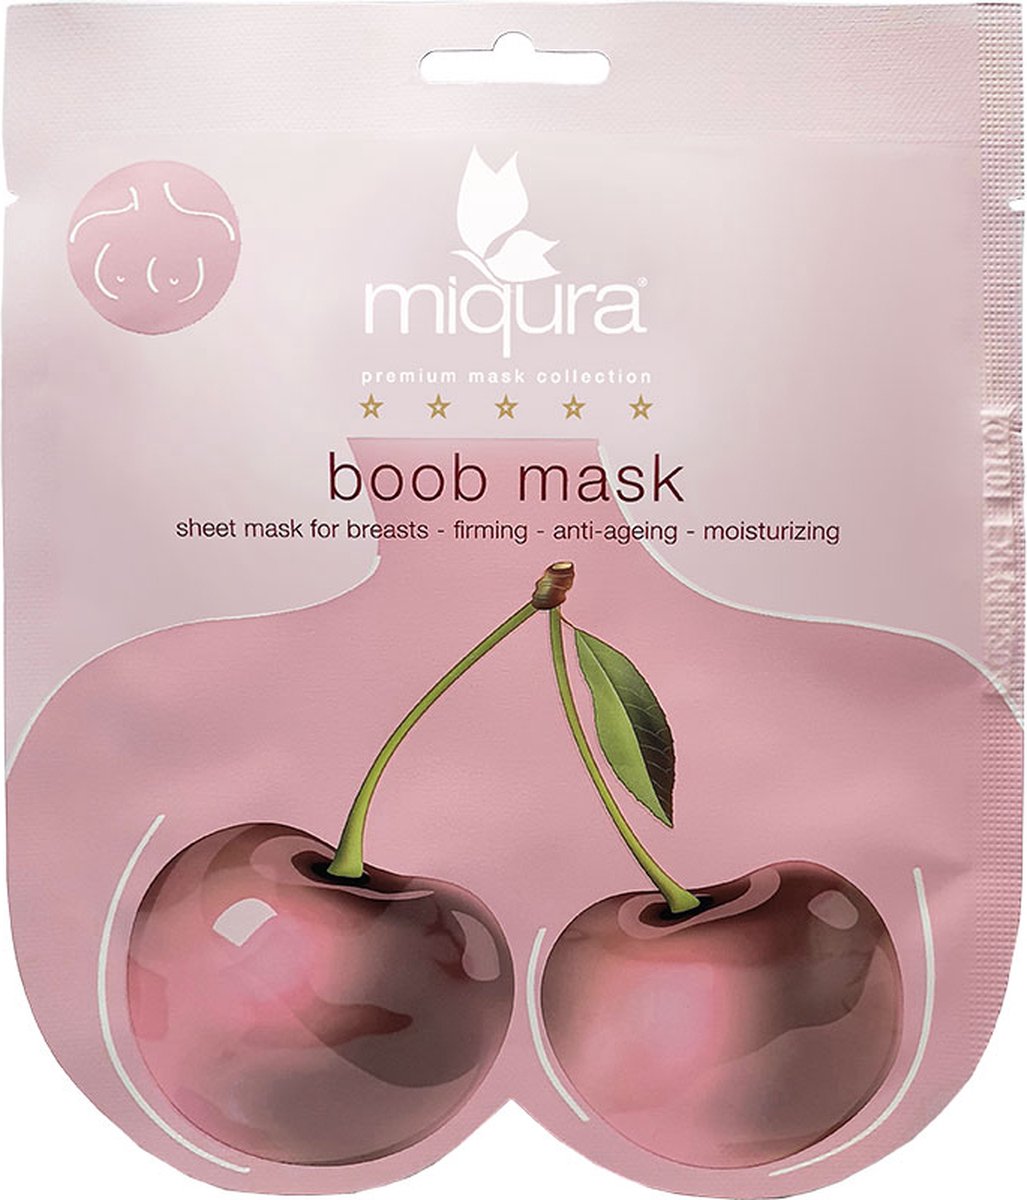 Miqura - Boob Mask